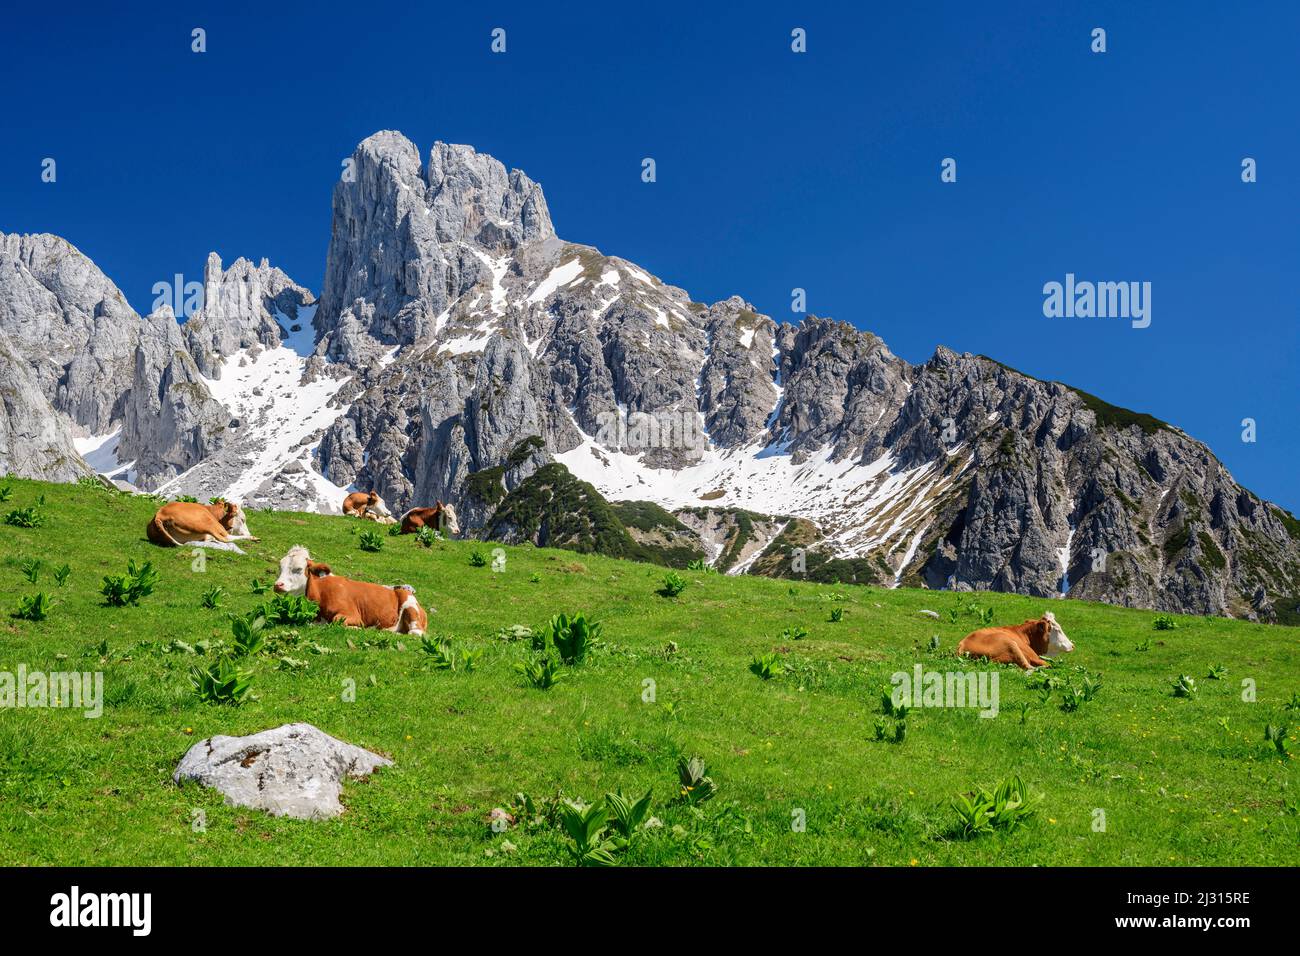 Les vaches se trouvent sur la prairie, Bischofsmütze en arrière-plan, Stuhlalm, Gosaukamm, Dachstein, Salzalpensteig, Hallstatt, patrimoine mondial de l'UNESCO, Salzbourg, Autriche Banque D'Images